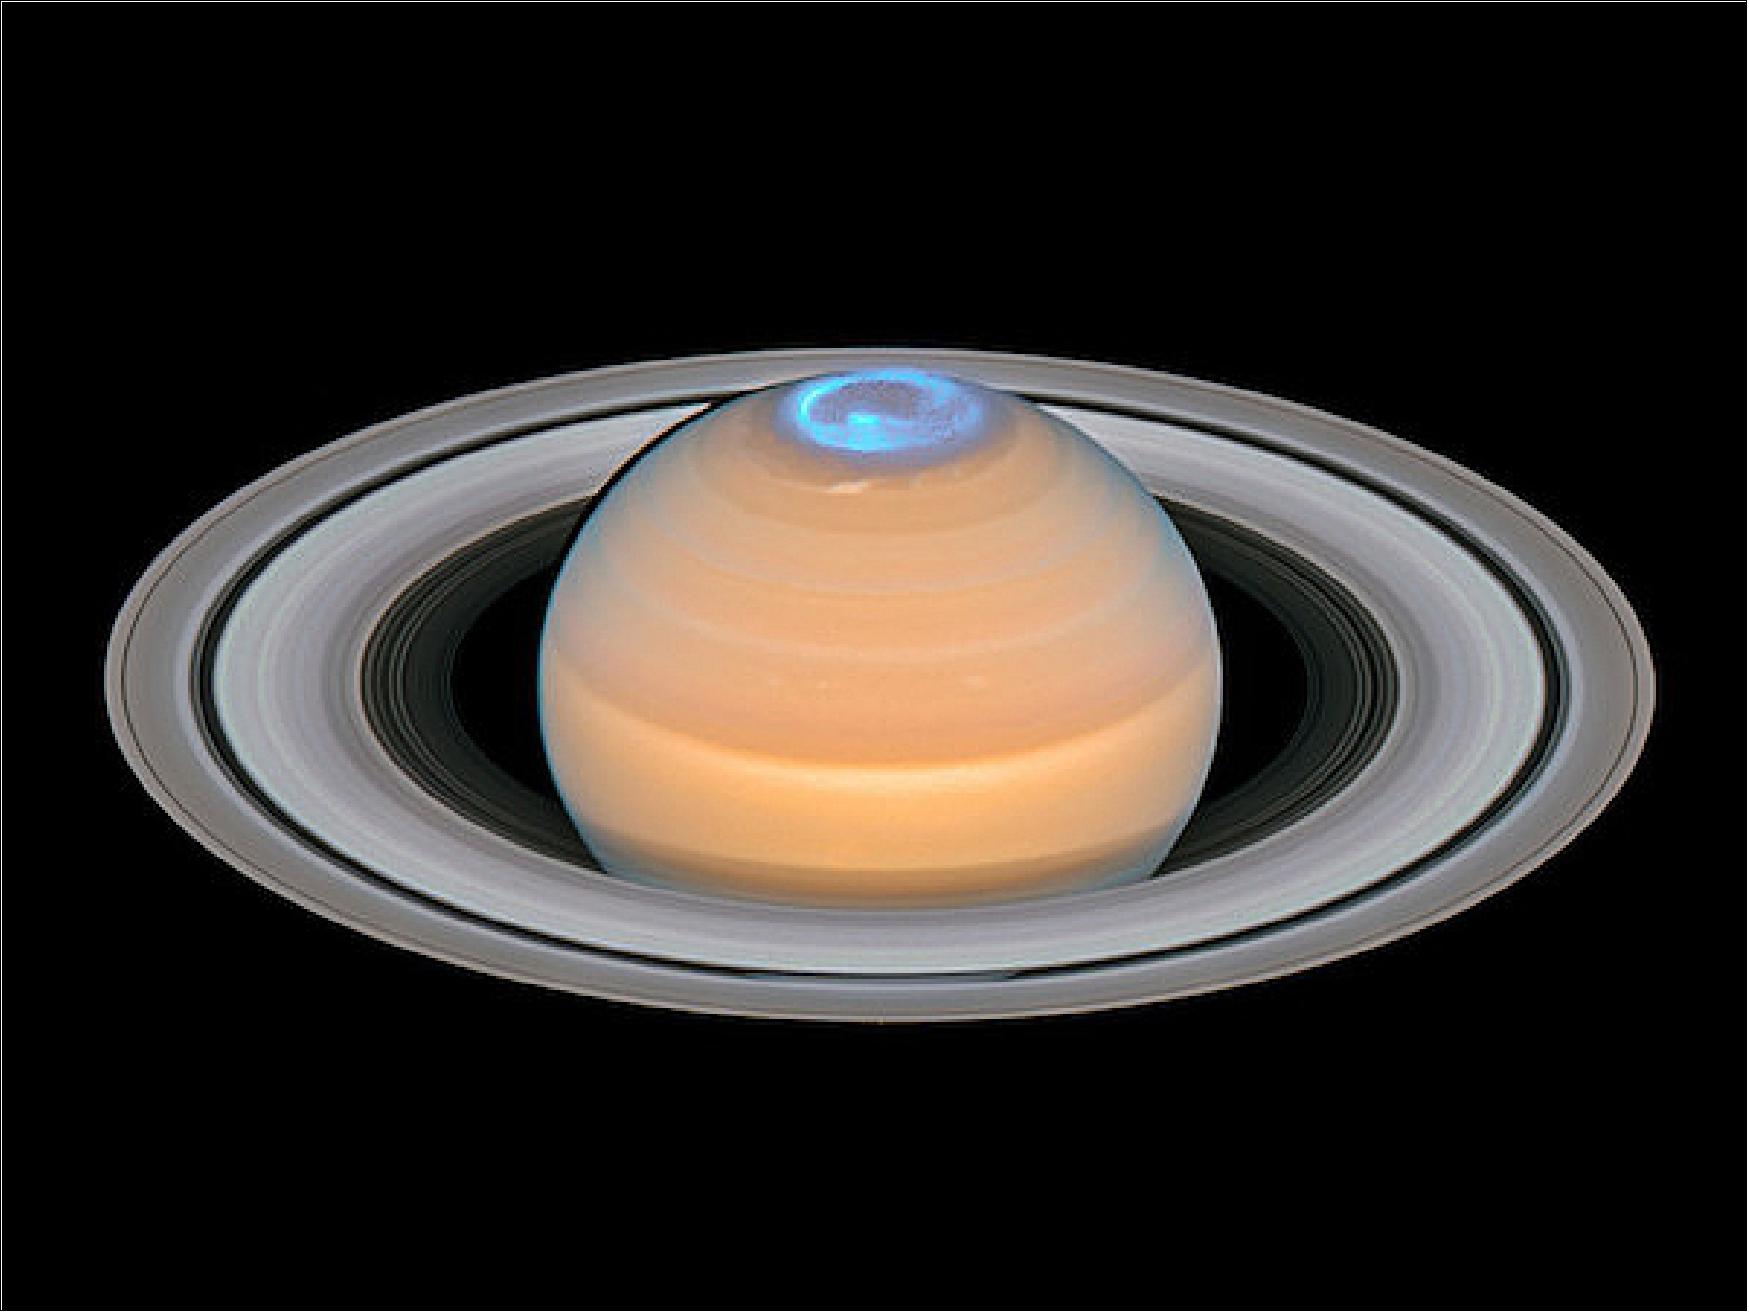 Figure 24: Saturn and its northern auroras (composite image), image credit: ESA/Hubble, NASA, A. Simon (GSFC) and the OPAL Team, J. DePasquale (STScI), L. Lamy (Observatoire de Paris)